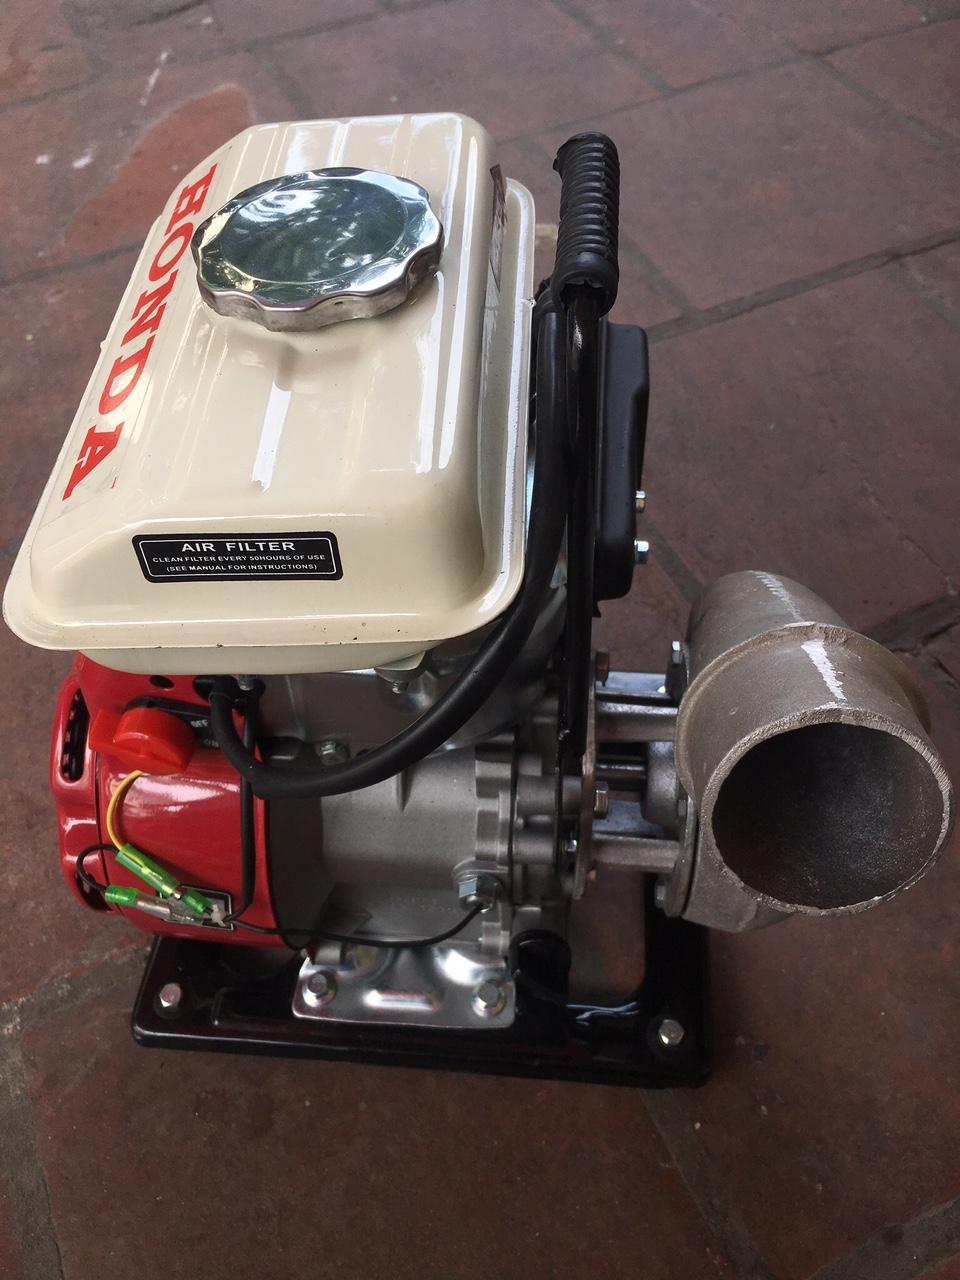 máy bơm nước honda f152 chạy bằng xăng (Thái Lan)